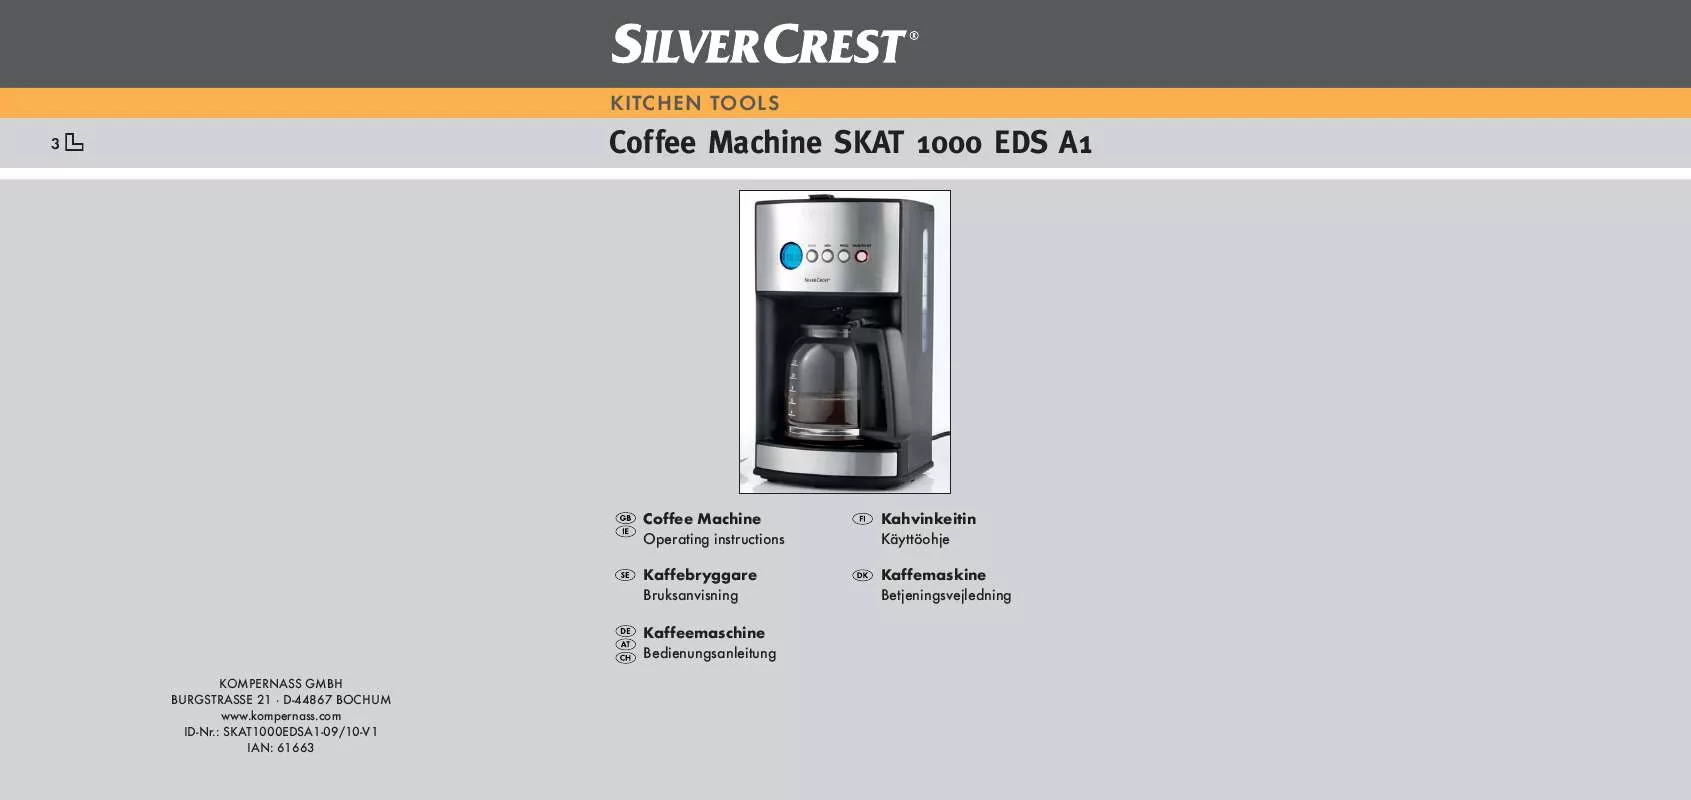 Mode d'emploi SILVERCREST SKAT 1000 EDS A1 COFFEE MACHINE